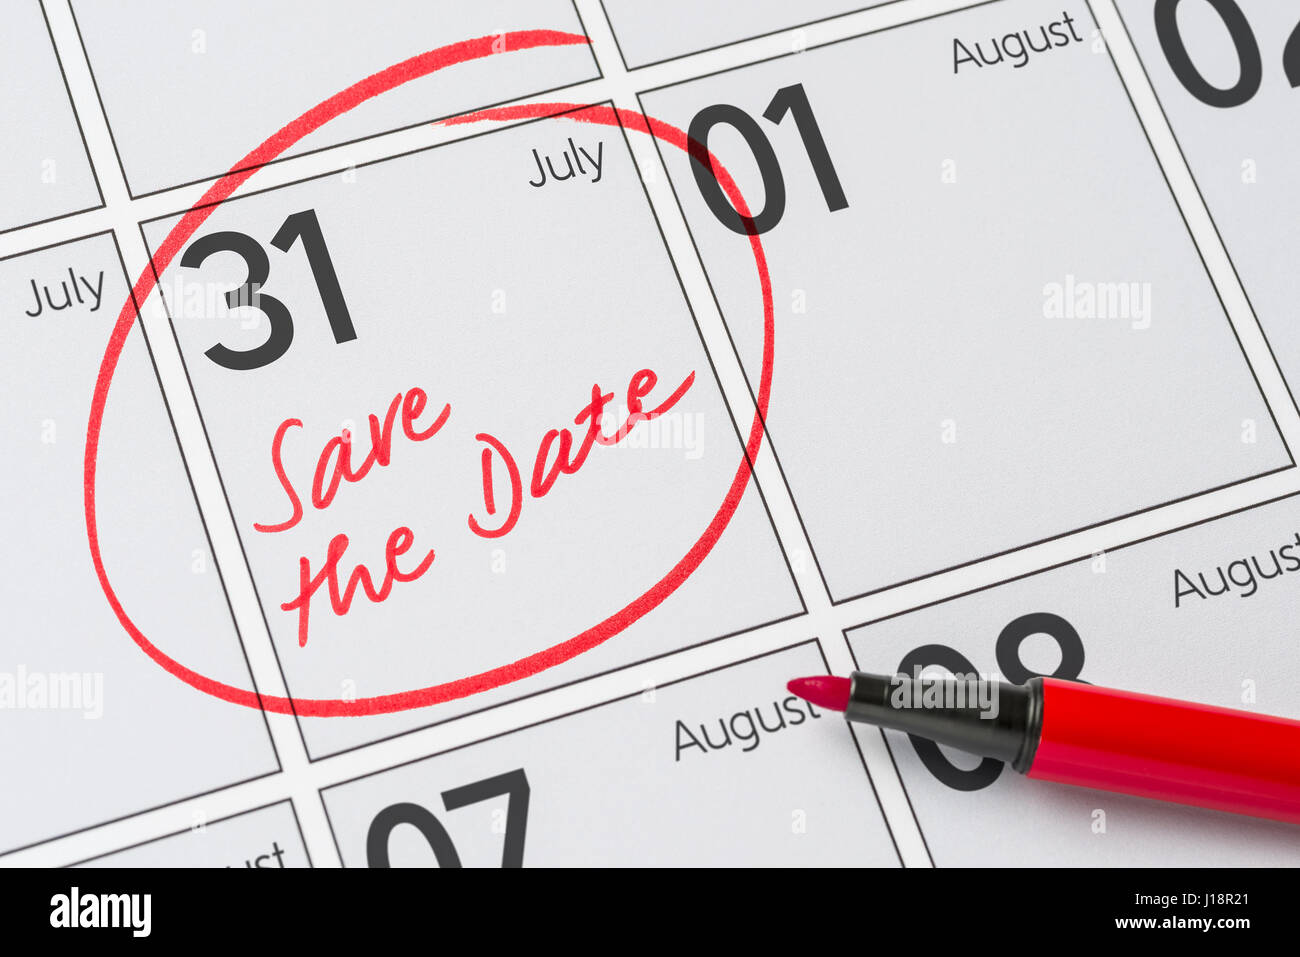 Enregistrer la date inscrite sur un calendrier - Juillet 31 Banque D'Images